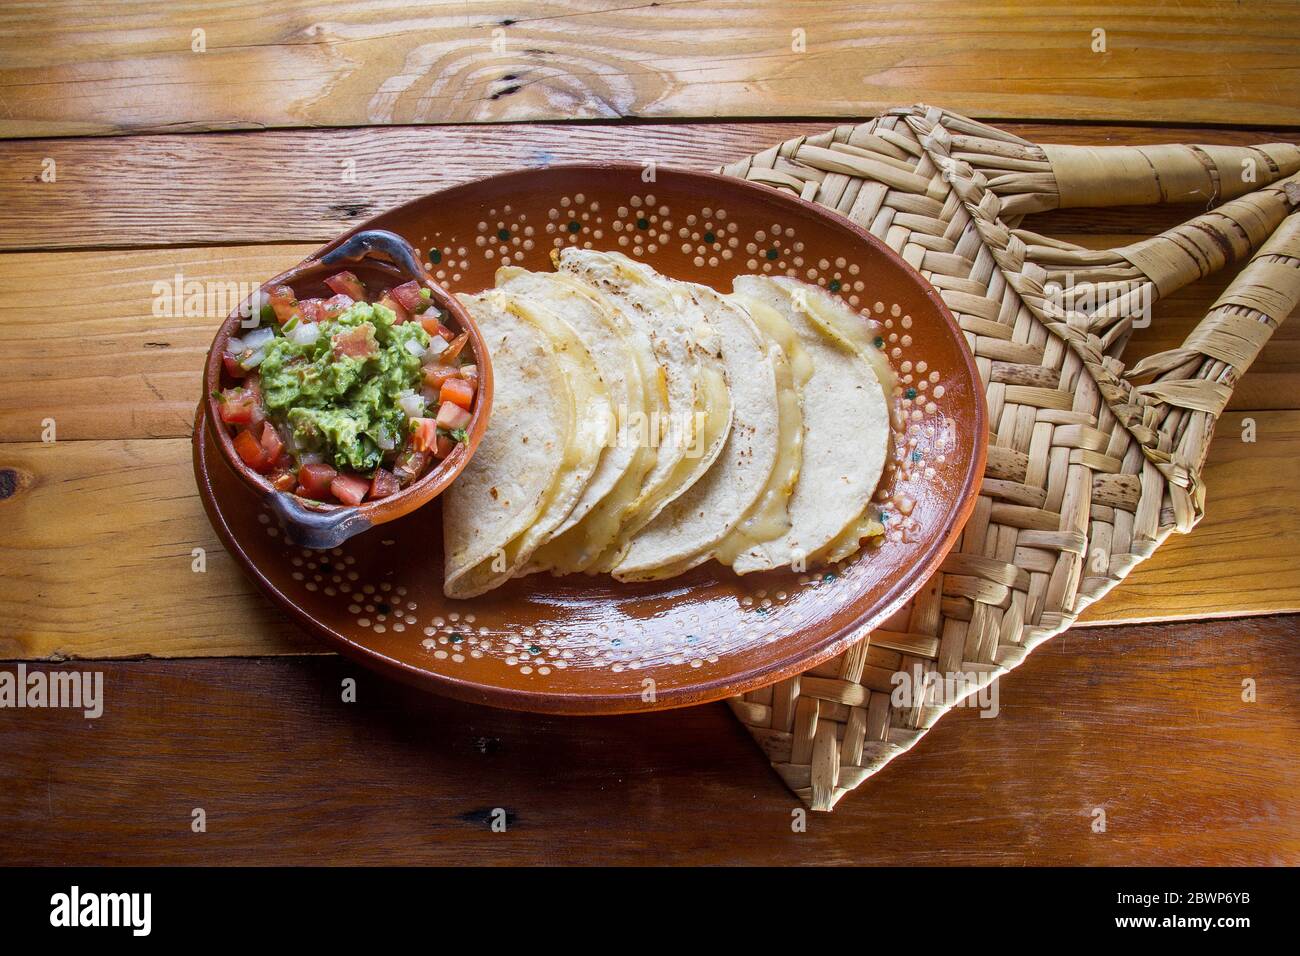 Quesadilla e salsa guacamole tradizionali messicane Foto Stock